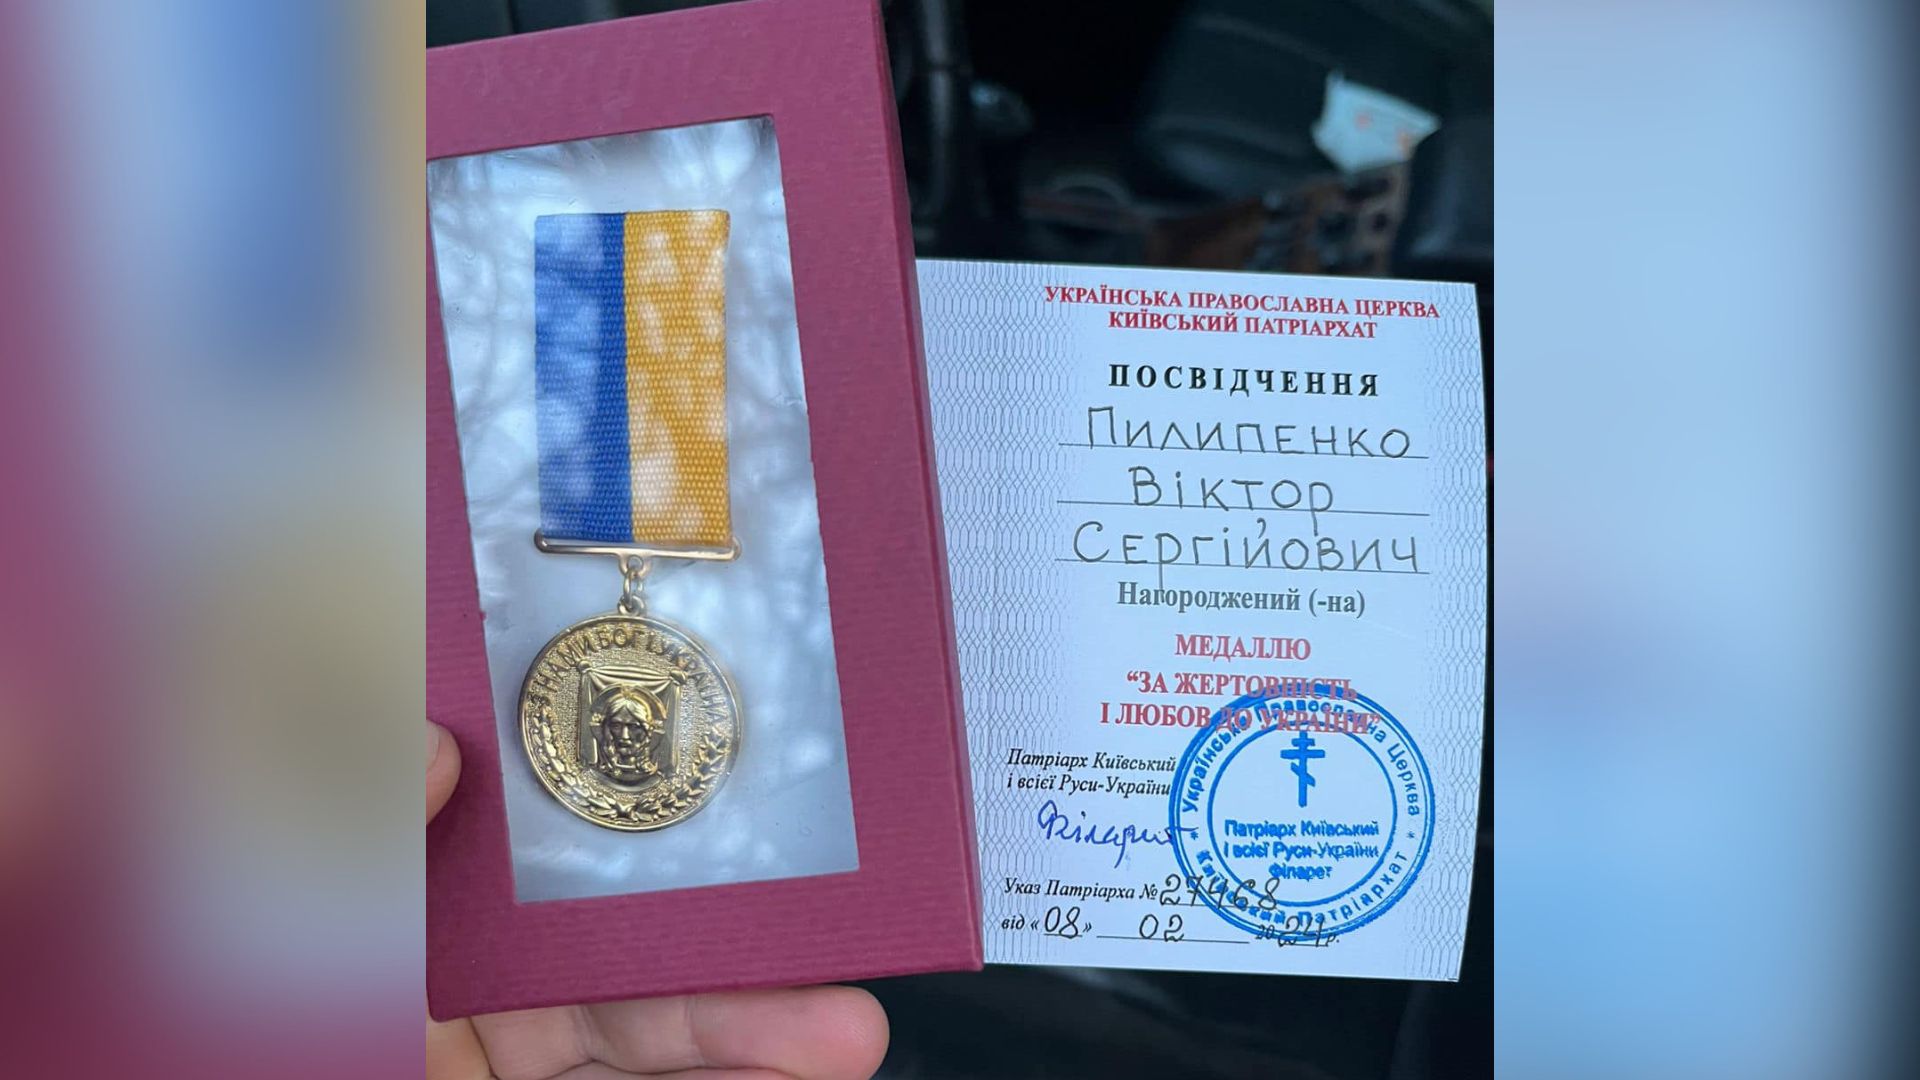 Гея-военного в Украине лишили медали. Так появился флешмоб